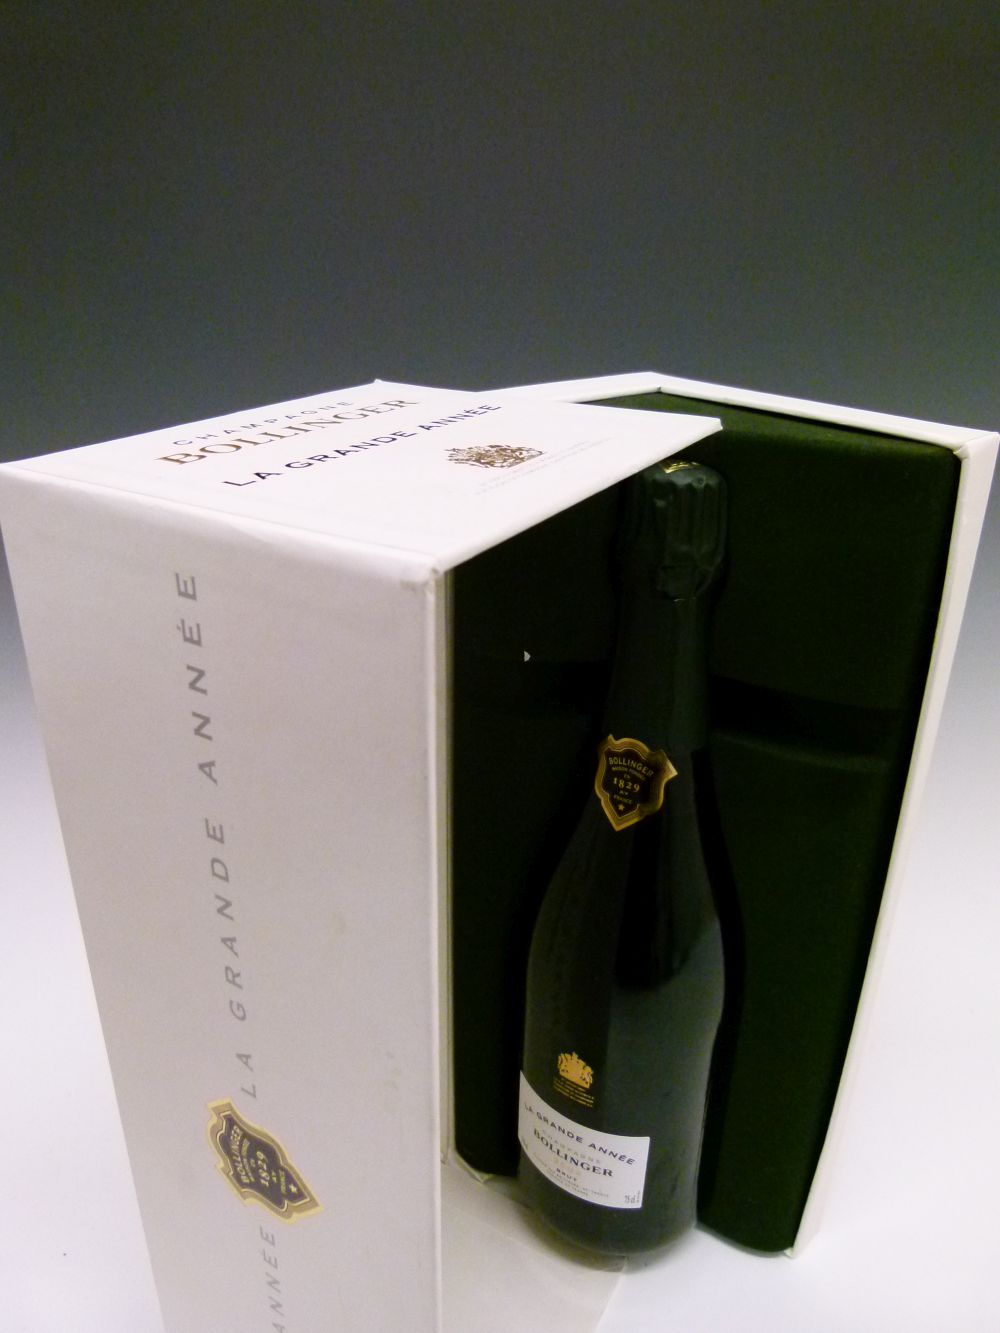 Bottle of Bollinger La Grande Annee Brut Champagne, 2002 vintage, in presentation box (1) Condition: - Image 2 of 6